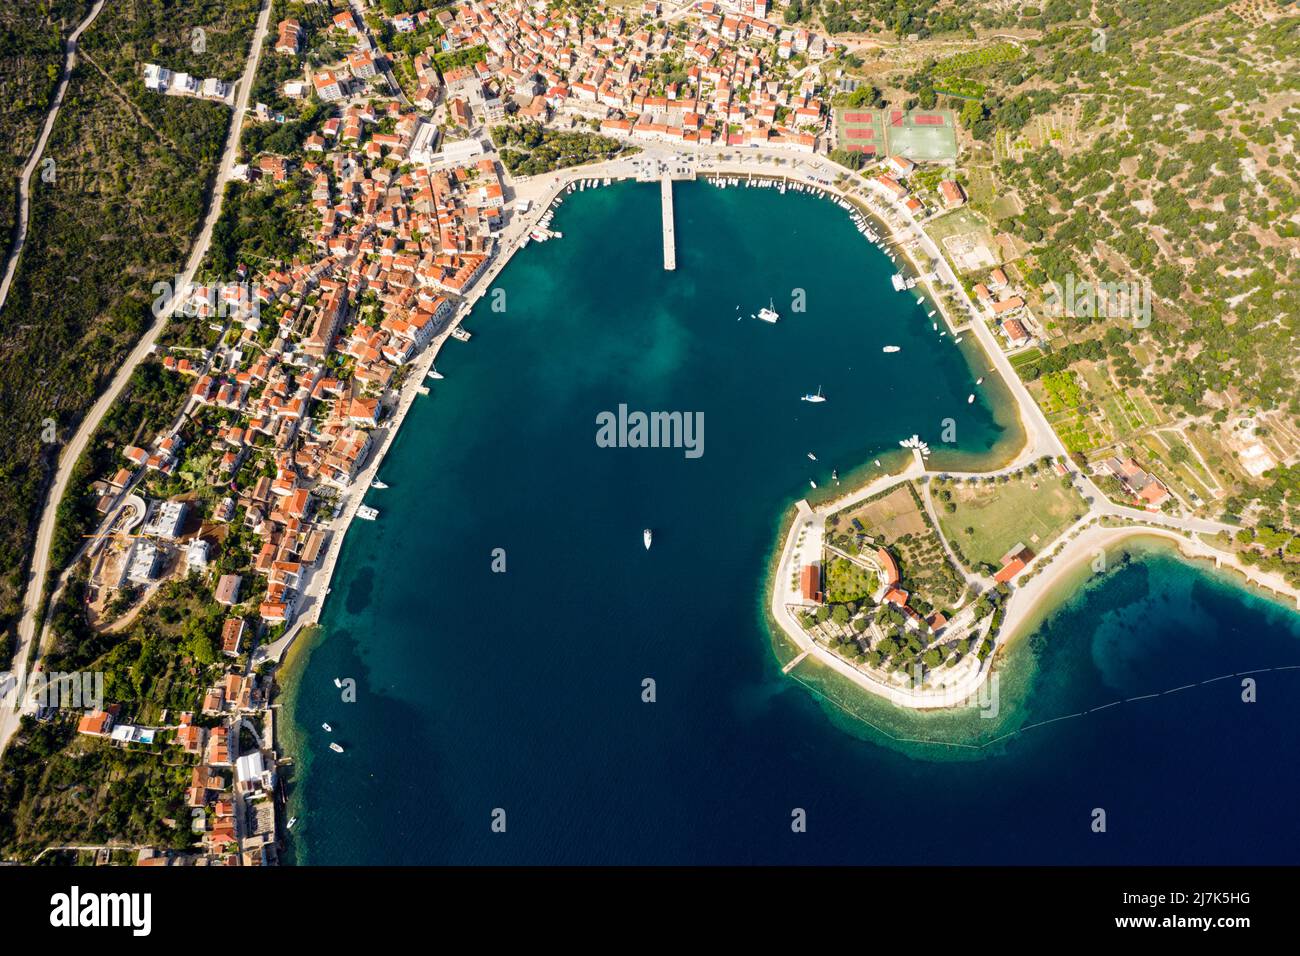 Ciudad y bahía de Vis, Isla Vis, Mar Mediterráneo, Croacia Foto de stock